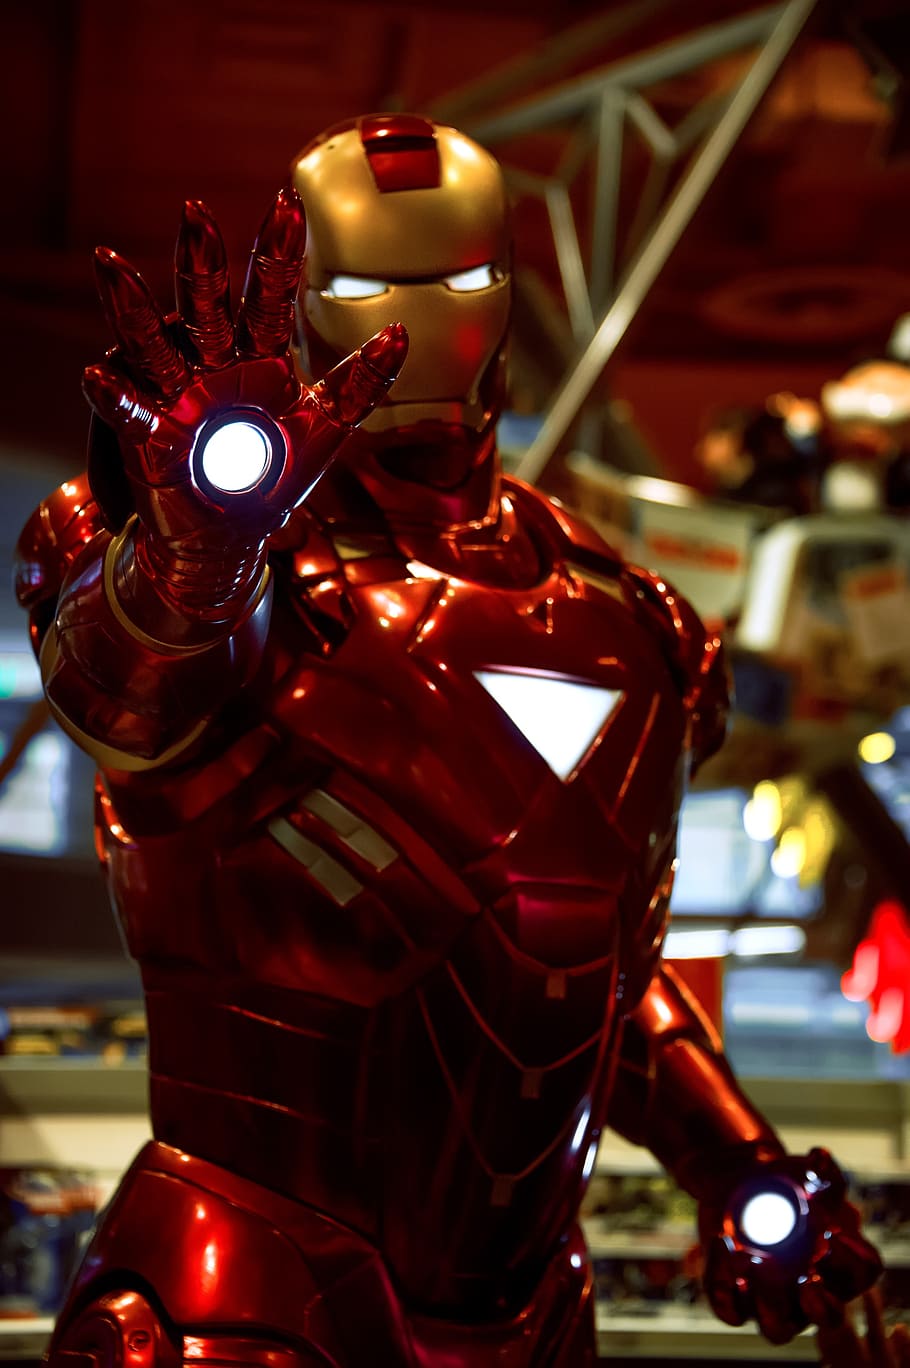 Iron Man statue, ironman, hero, comic, focus on foreground, illuminated